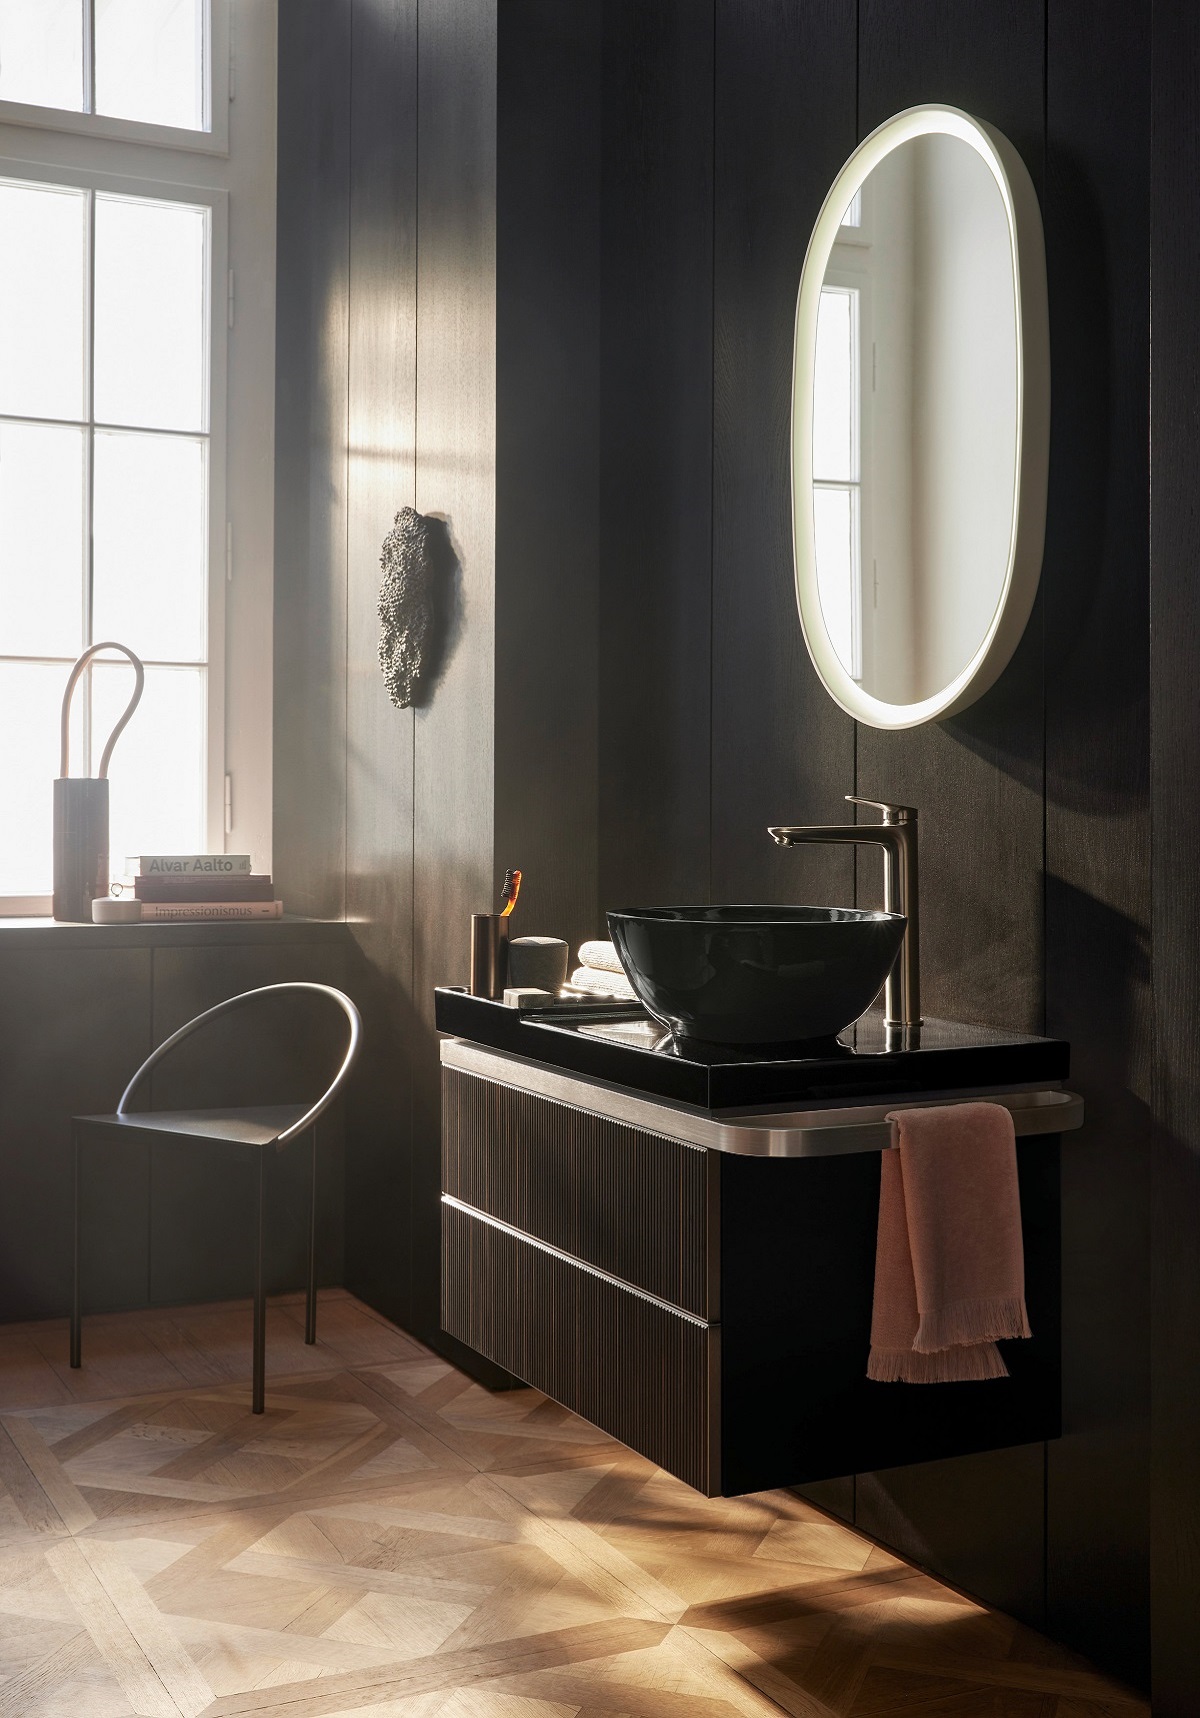 black basin on vanity unit in bathroom against black wall